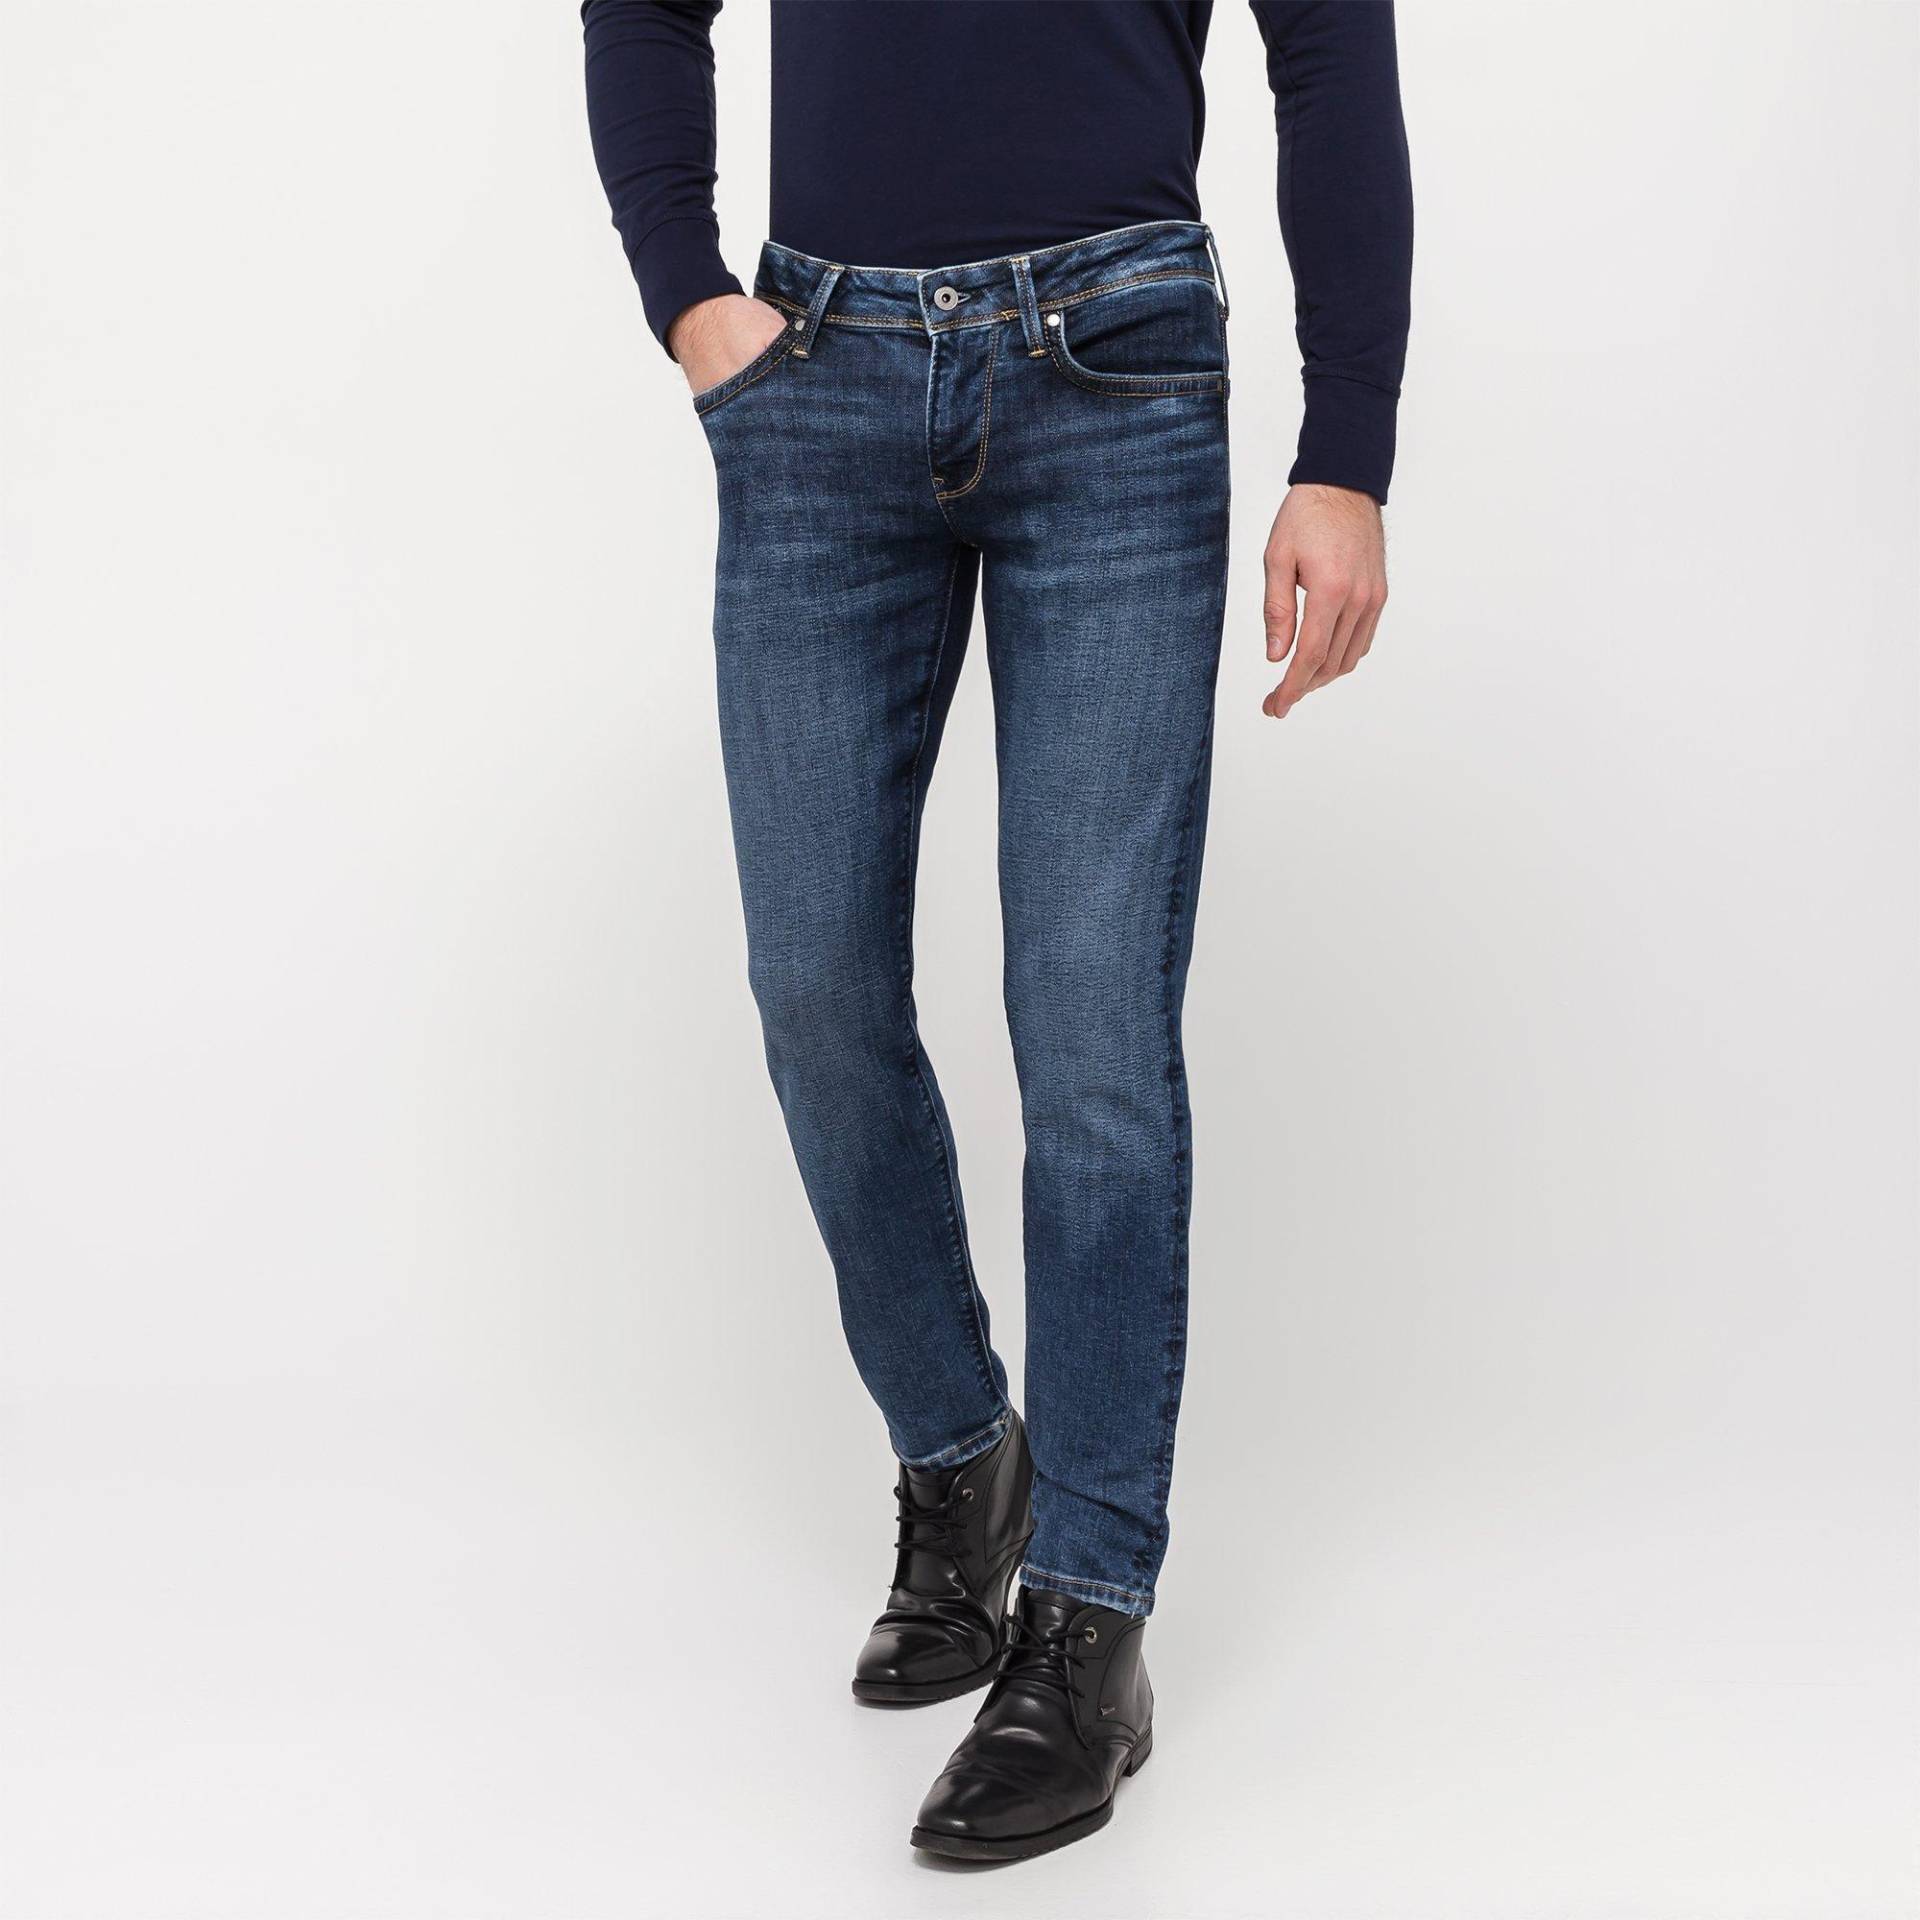 Jeans, Slim Fit Herren Jeans W31 von Pepe Jeans